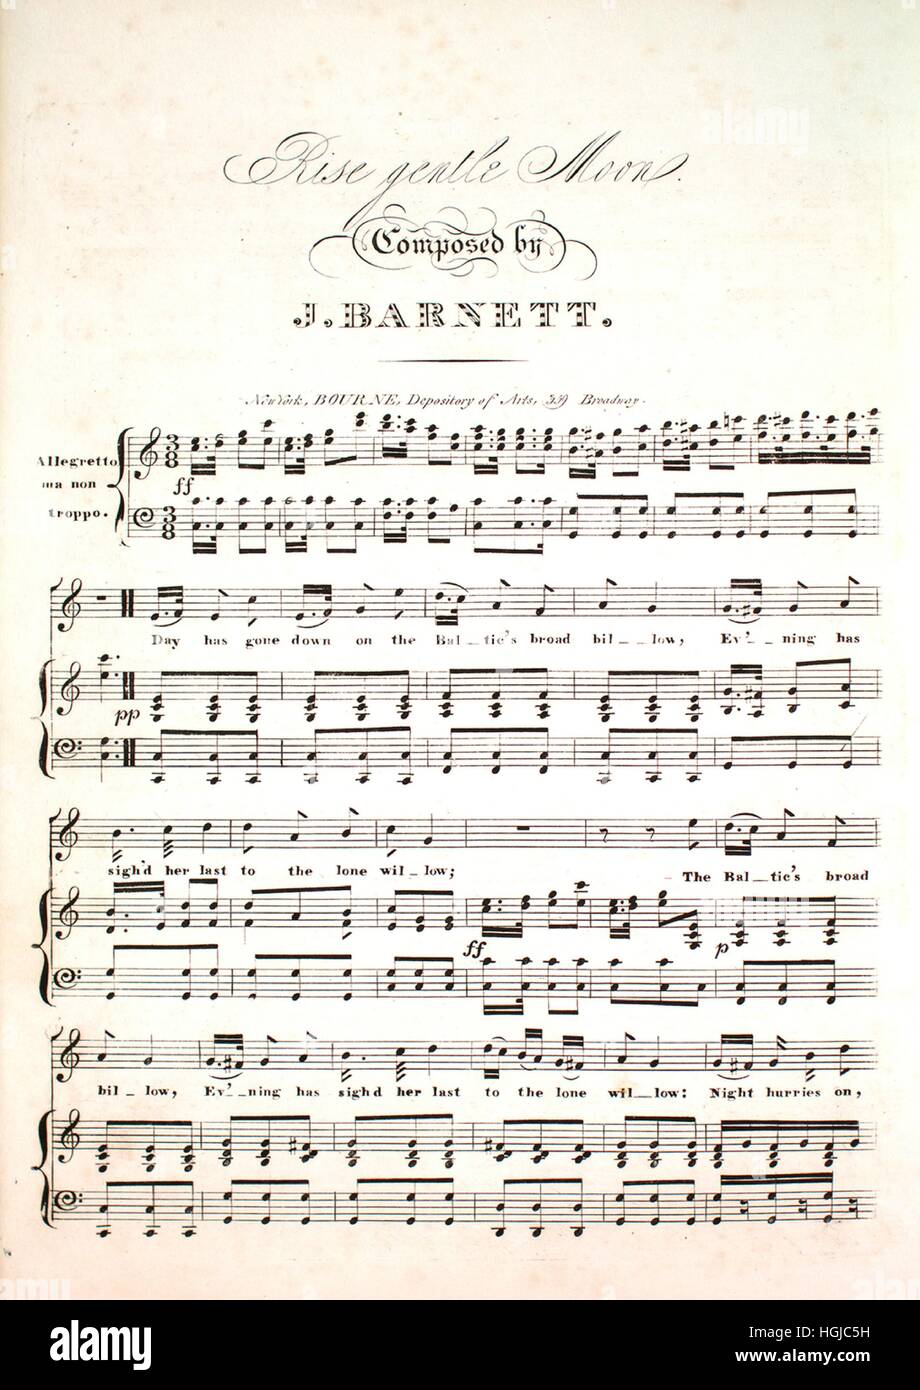 Imagen de cubierta de partituras de la canción 'Rise suave de luna", con  notas de autoría original leyendo 'compuesto por J' Barnett, Estados  Unidos, 1900. El editor figura como "Bourne, depositario de